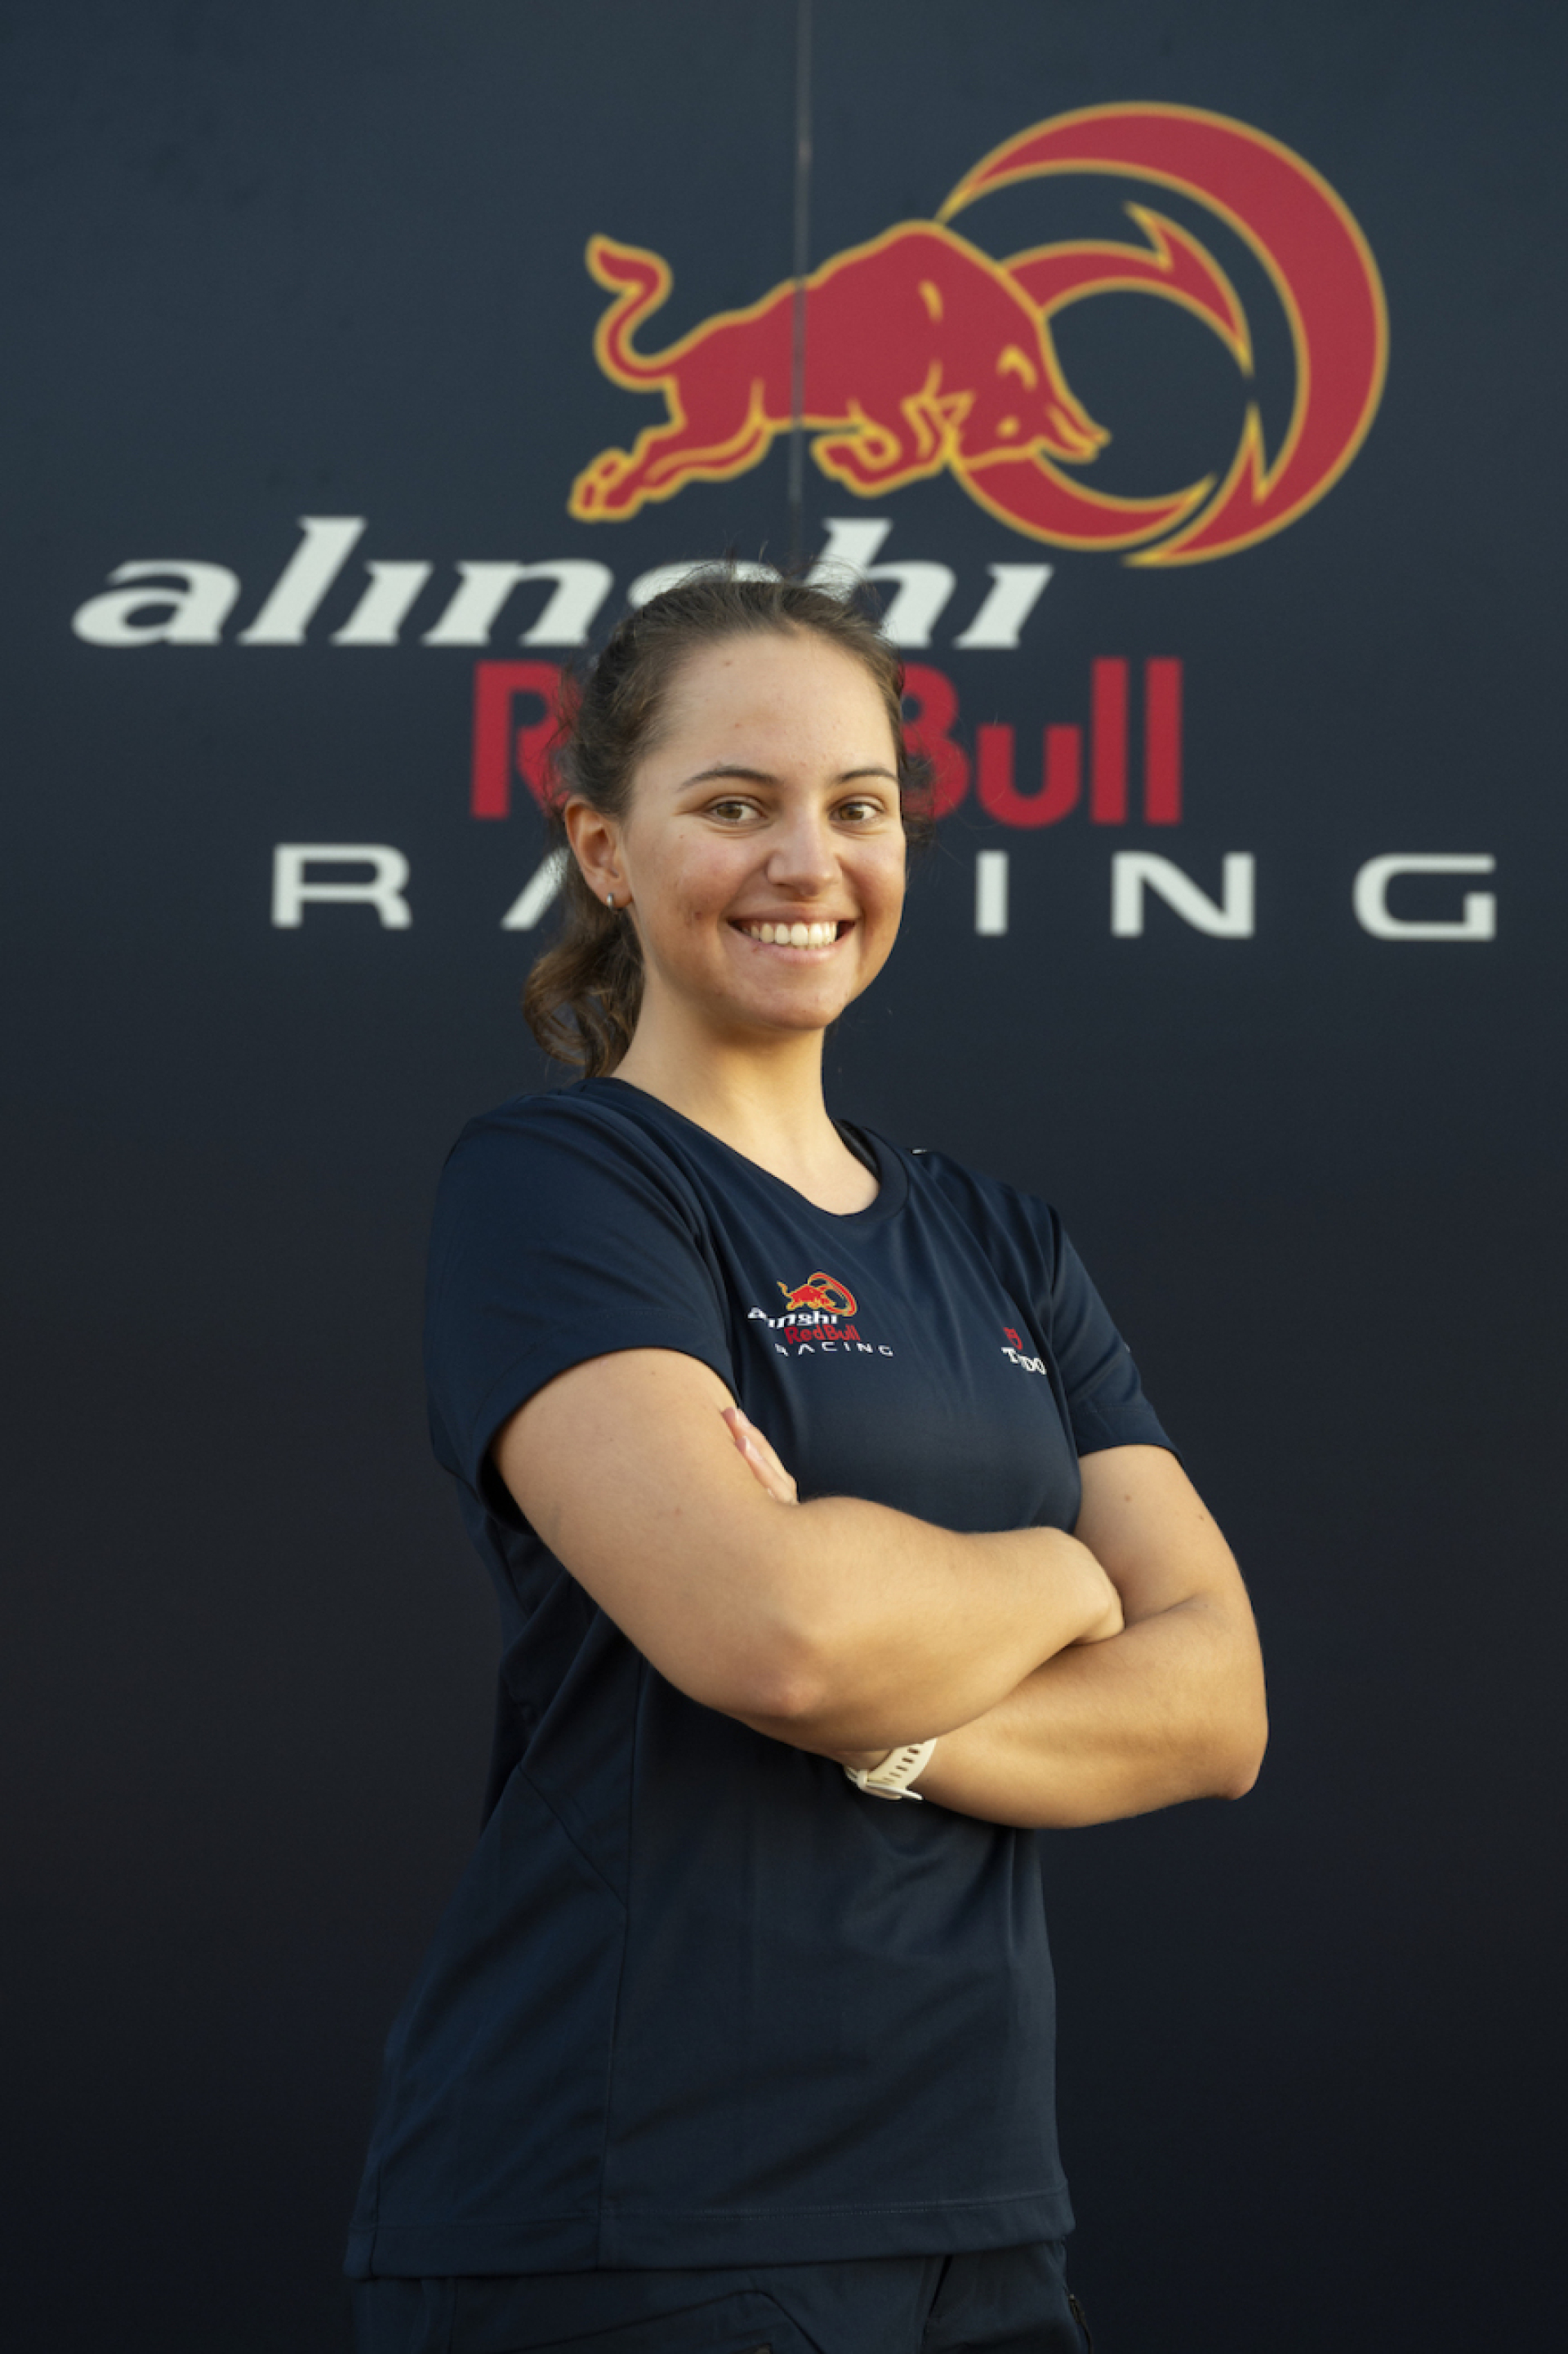 Photo credit: Alinghi Red Bull Racing / Mihai Stetcu